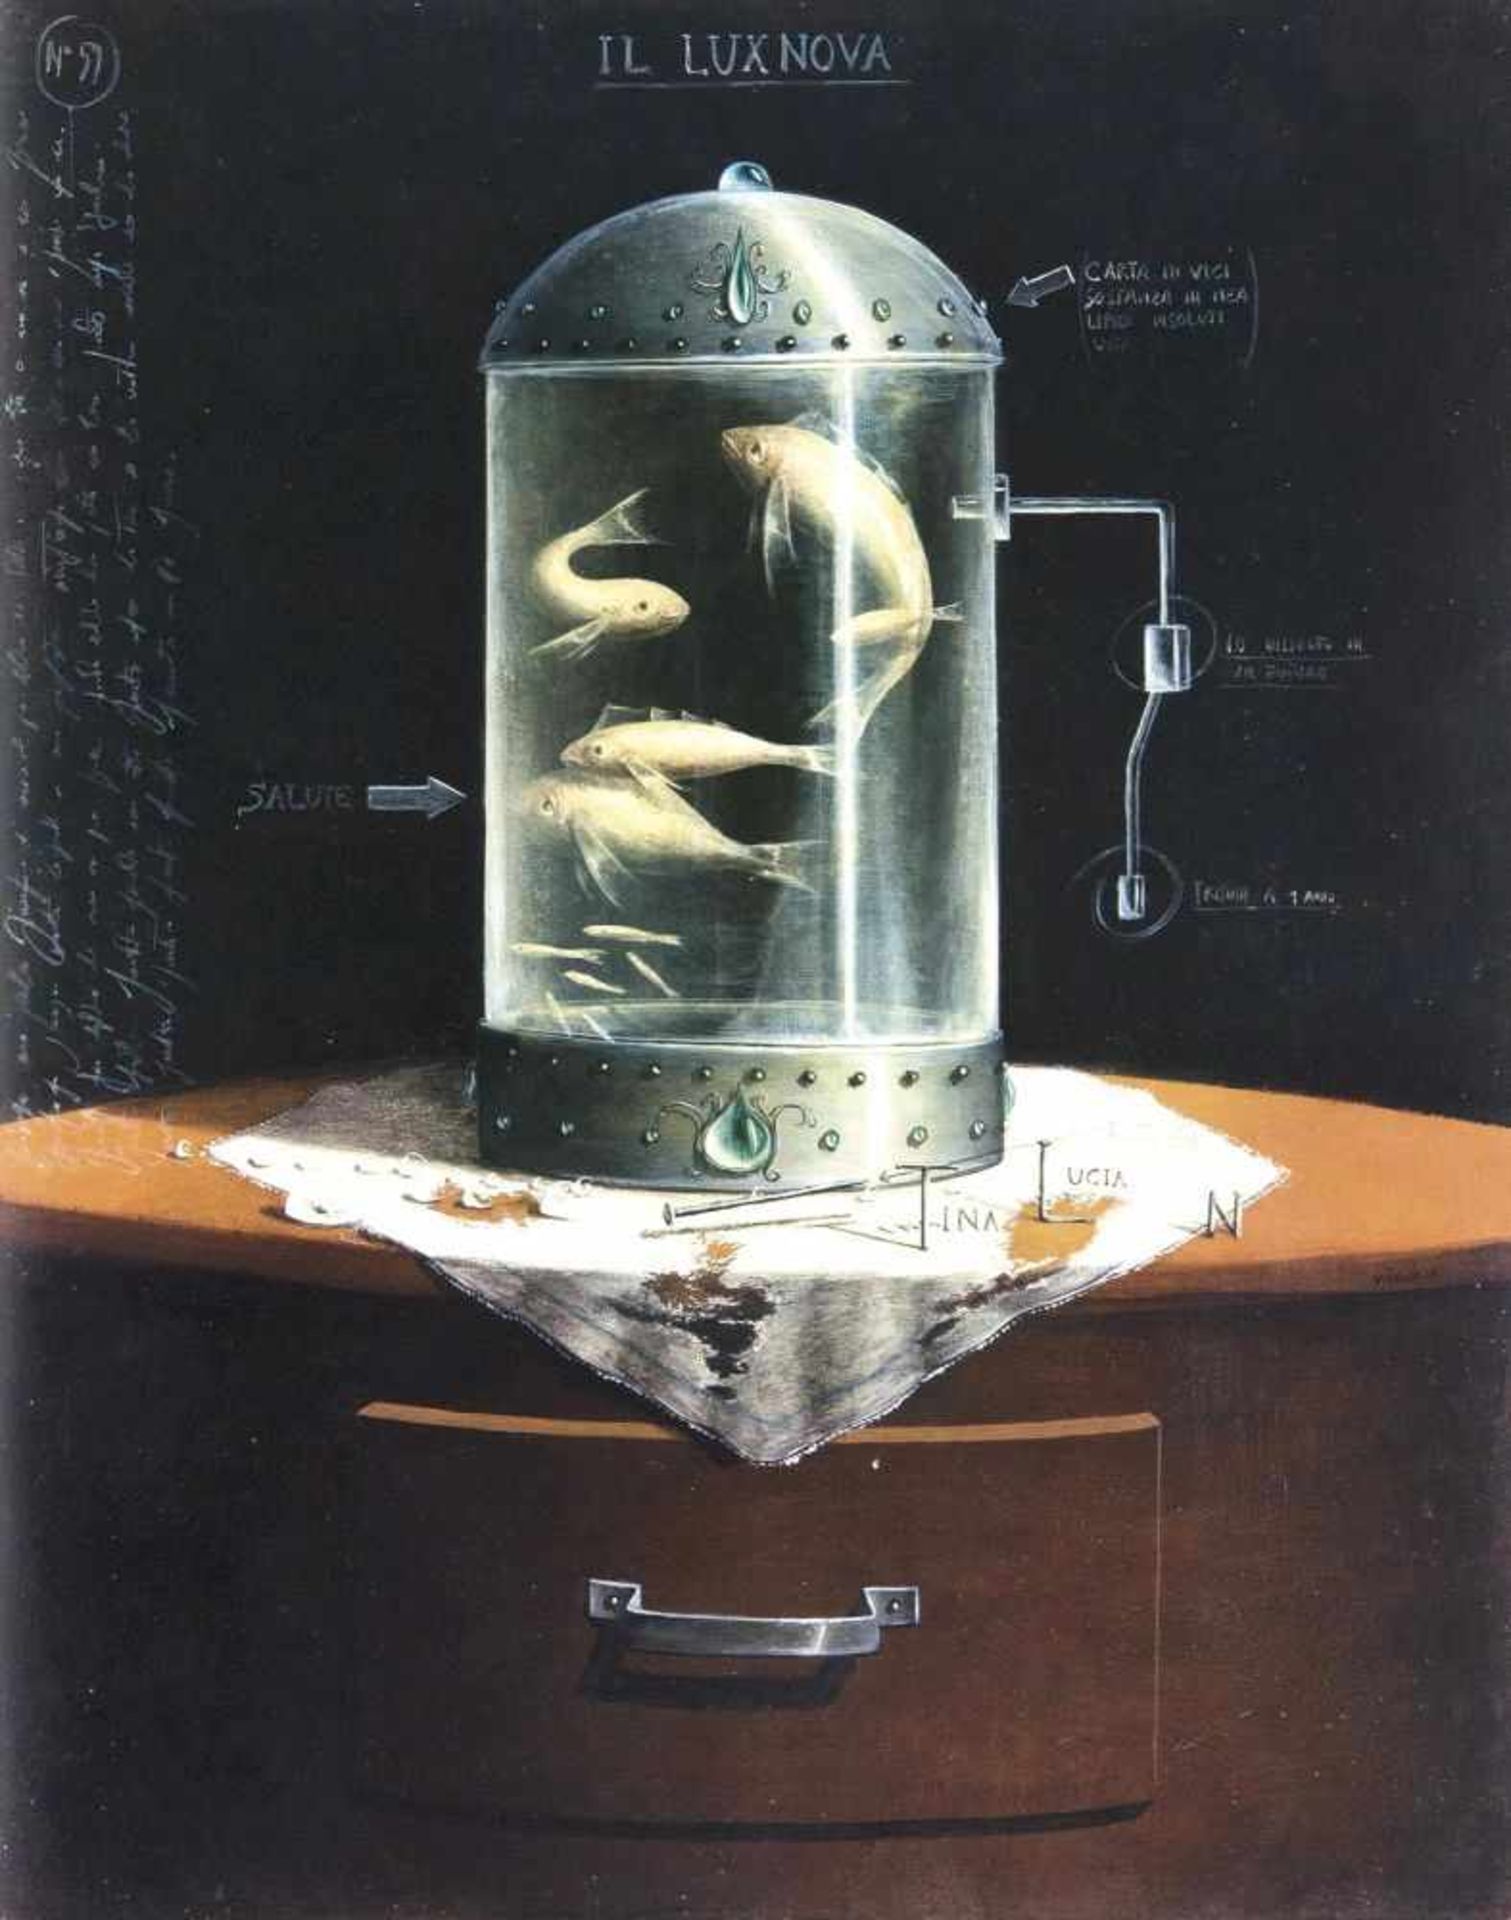 Virgilio(La Spezia 1967)Il Lux NovaMischtechnik/Hartfaser, 50 x 40 cm, betit. und vielfach